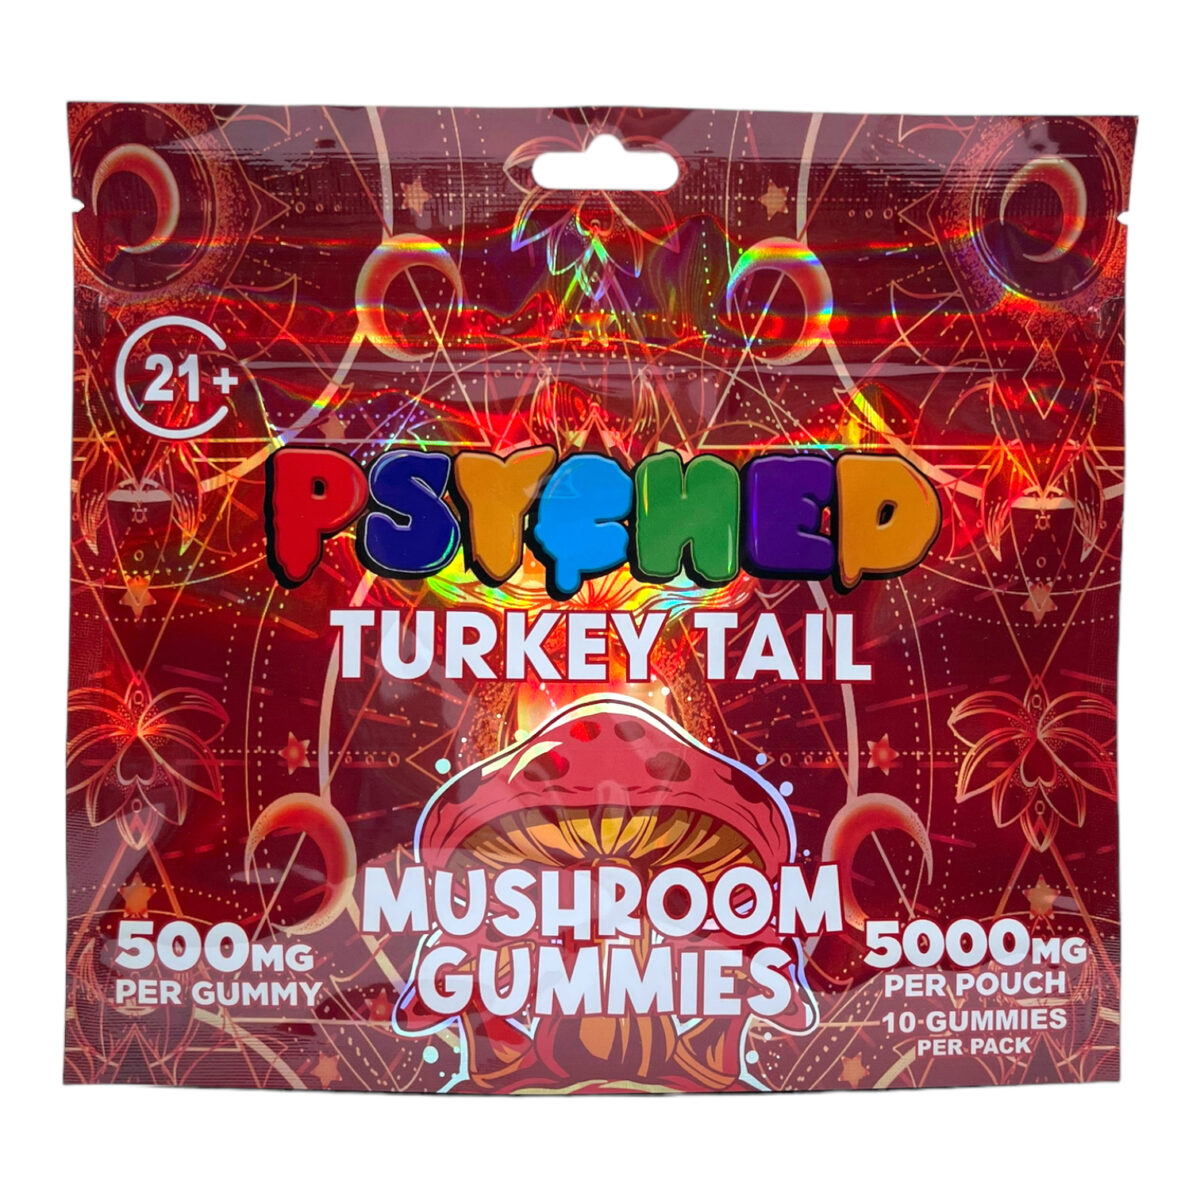 Psyched Turkey Tail Mushroom Gummies – 500mg